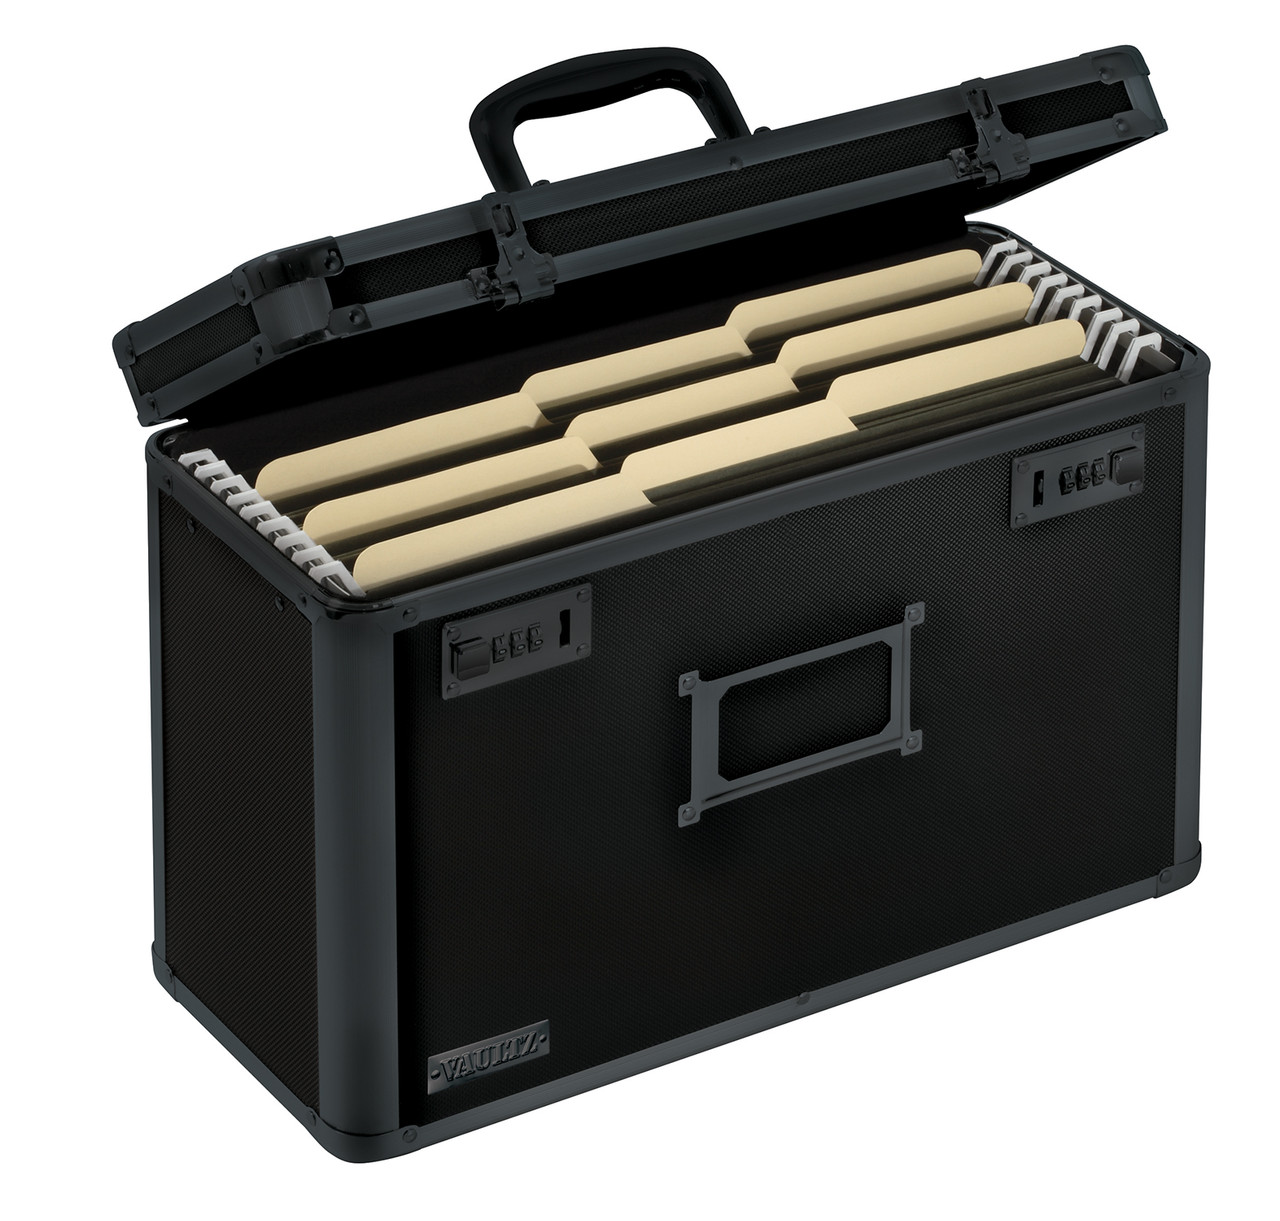  Vaultz Locking Briefcase - 18 x 14.25 x 5 Inch